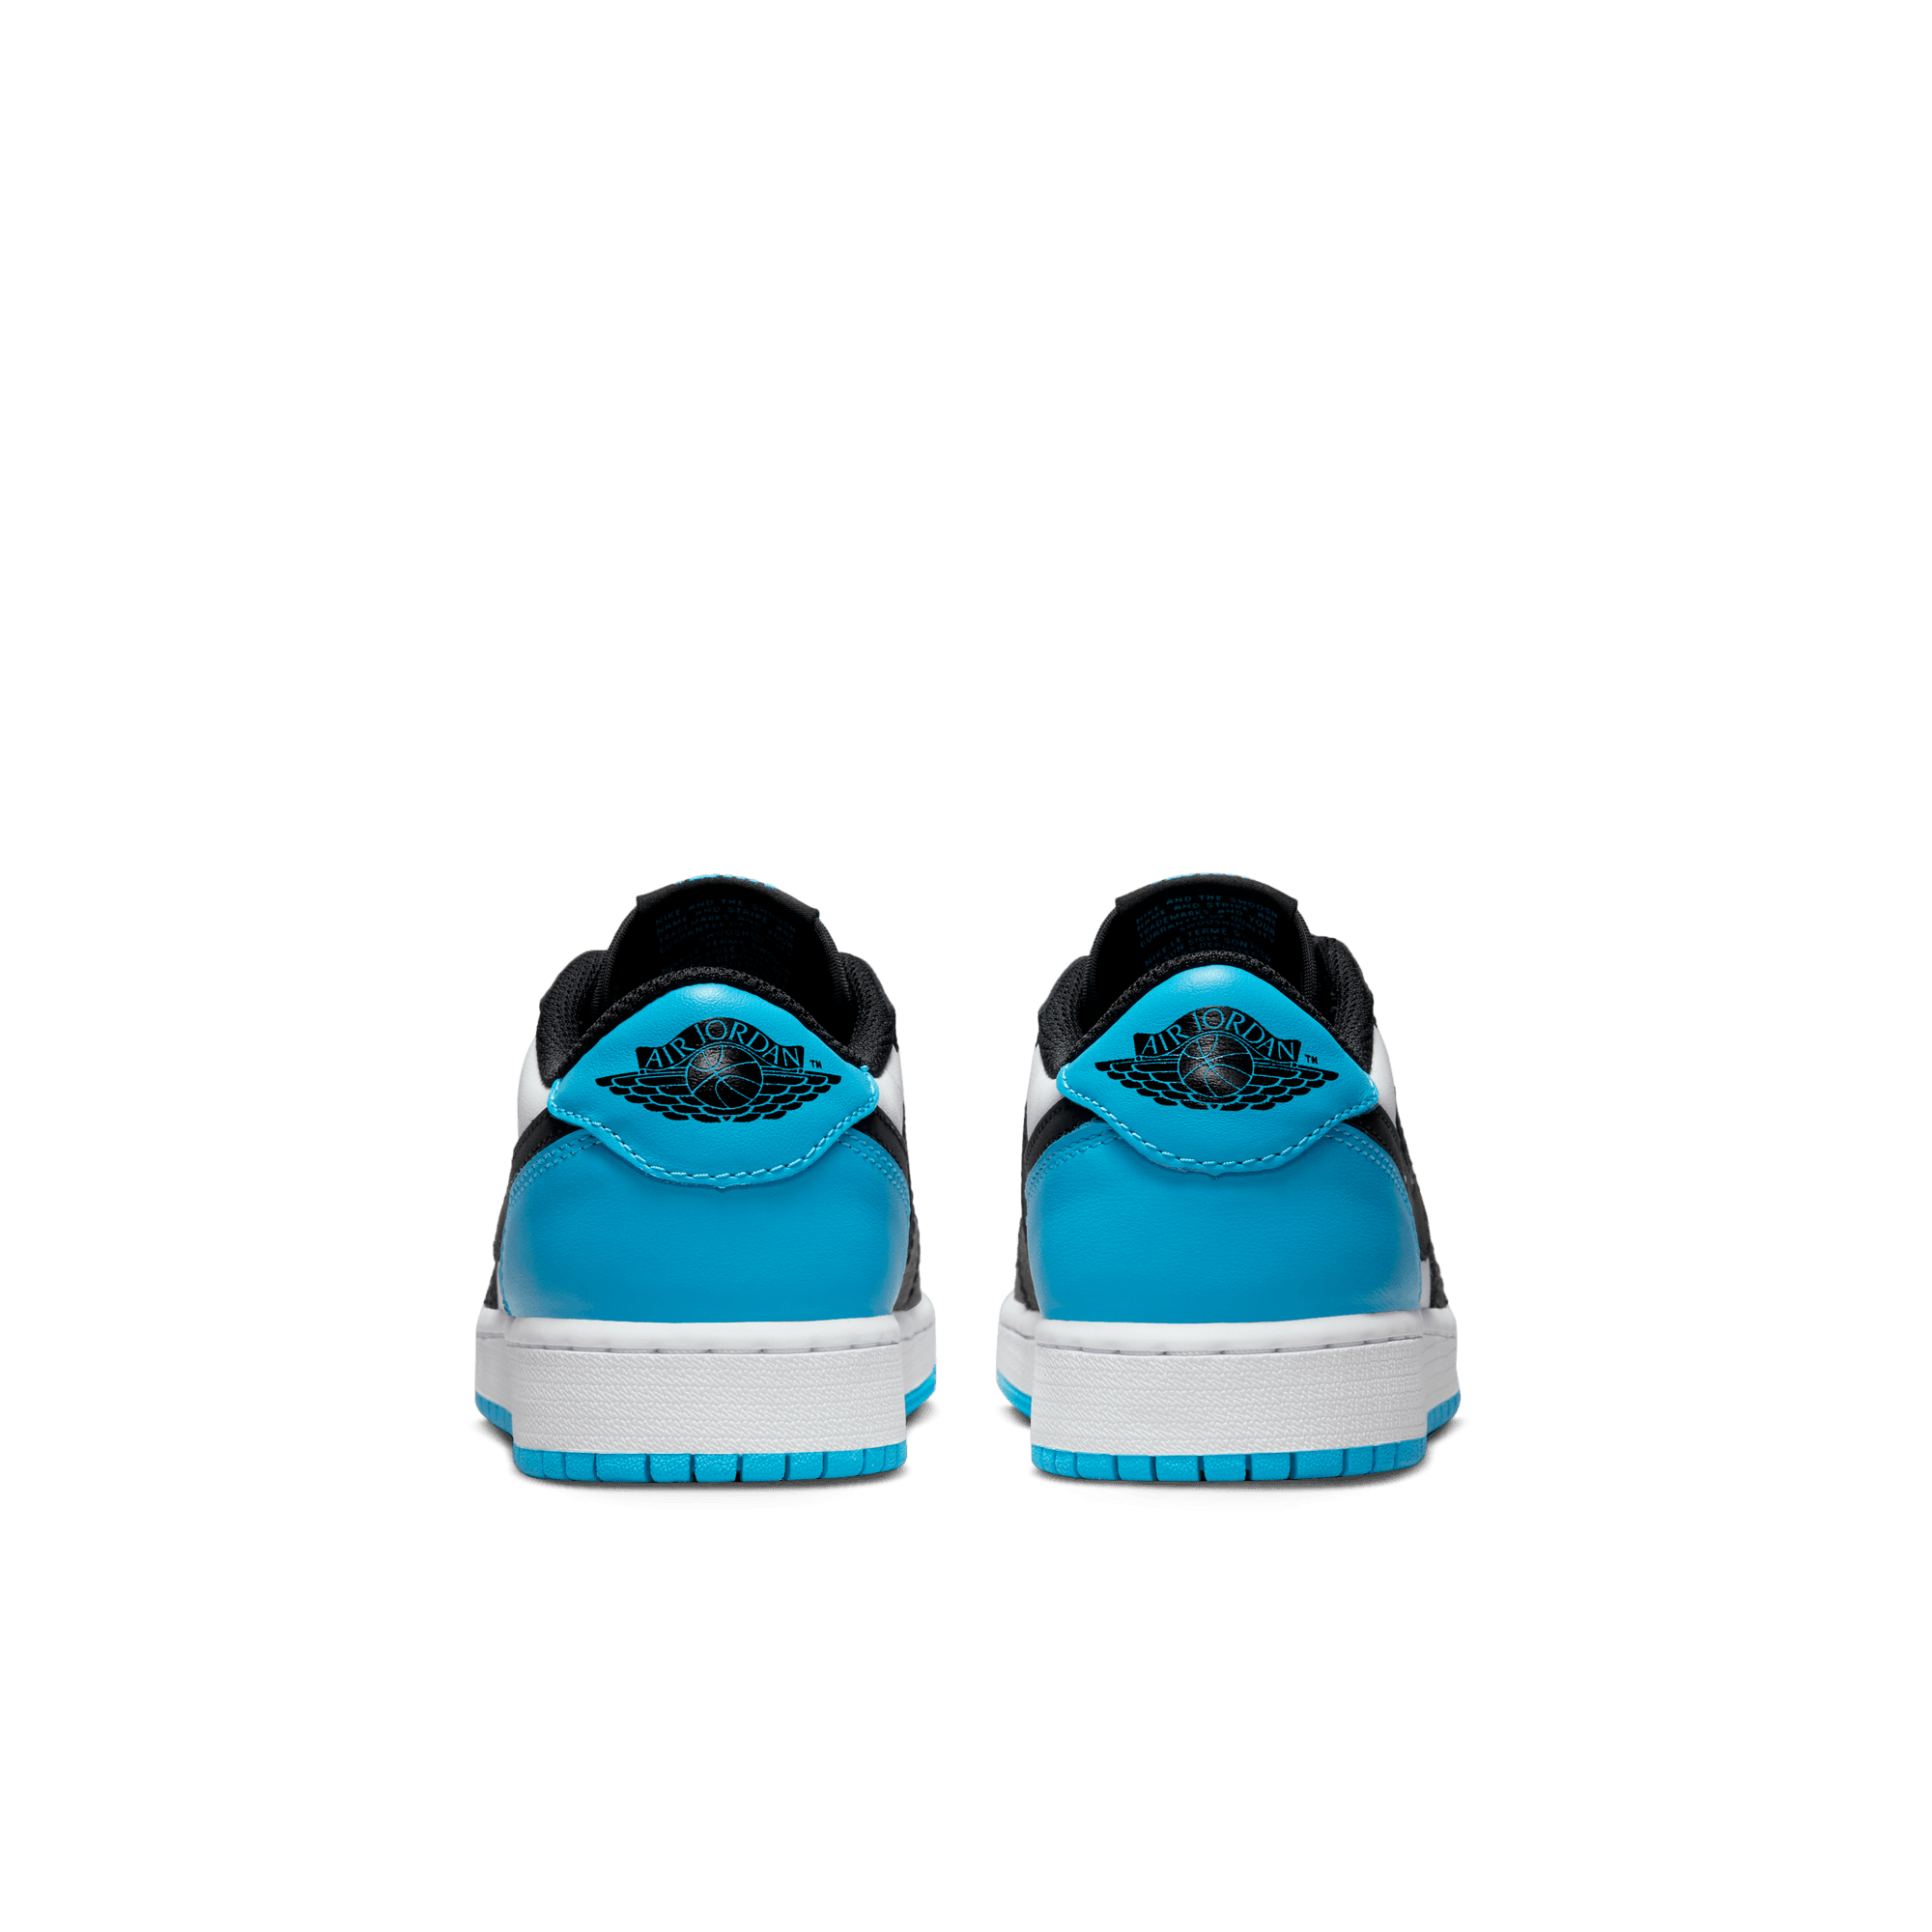 Nike Air Jordan 1 Retro Low OG (GS)